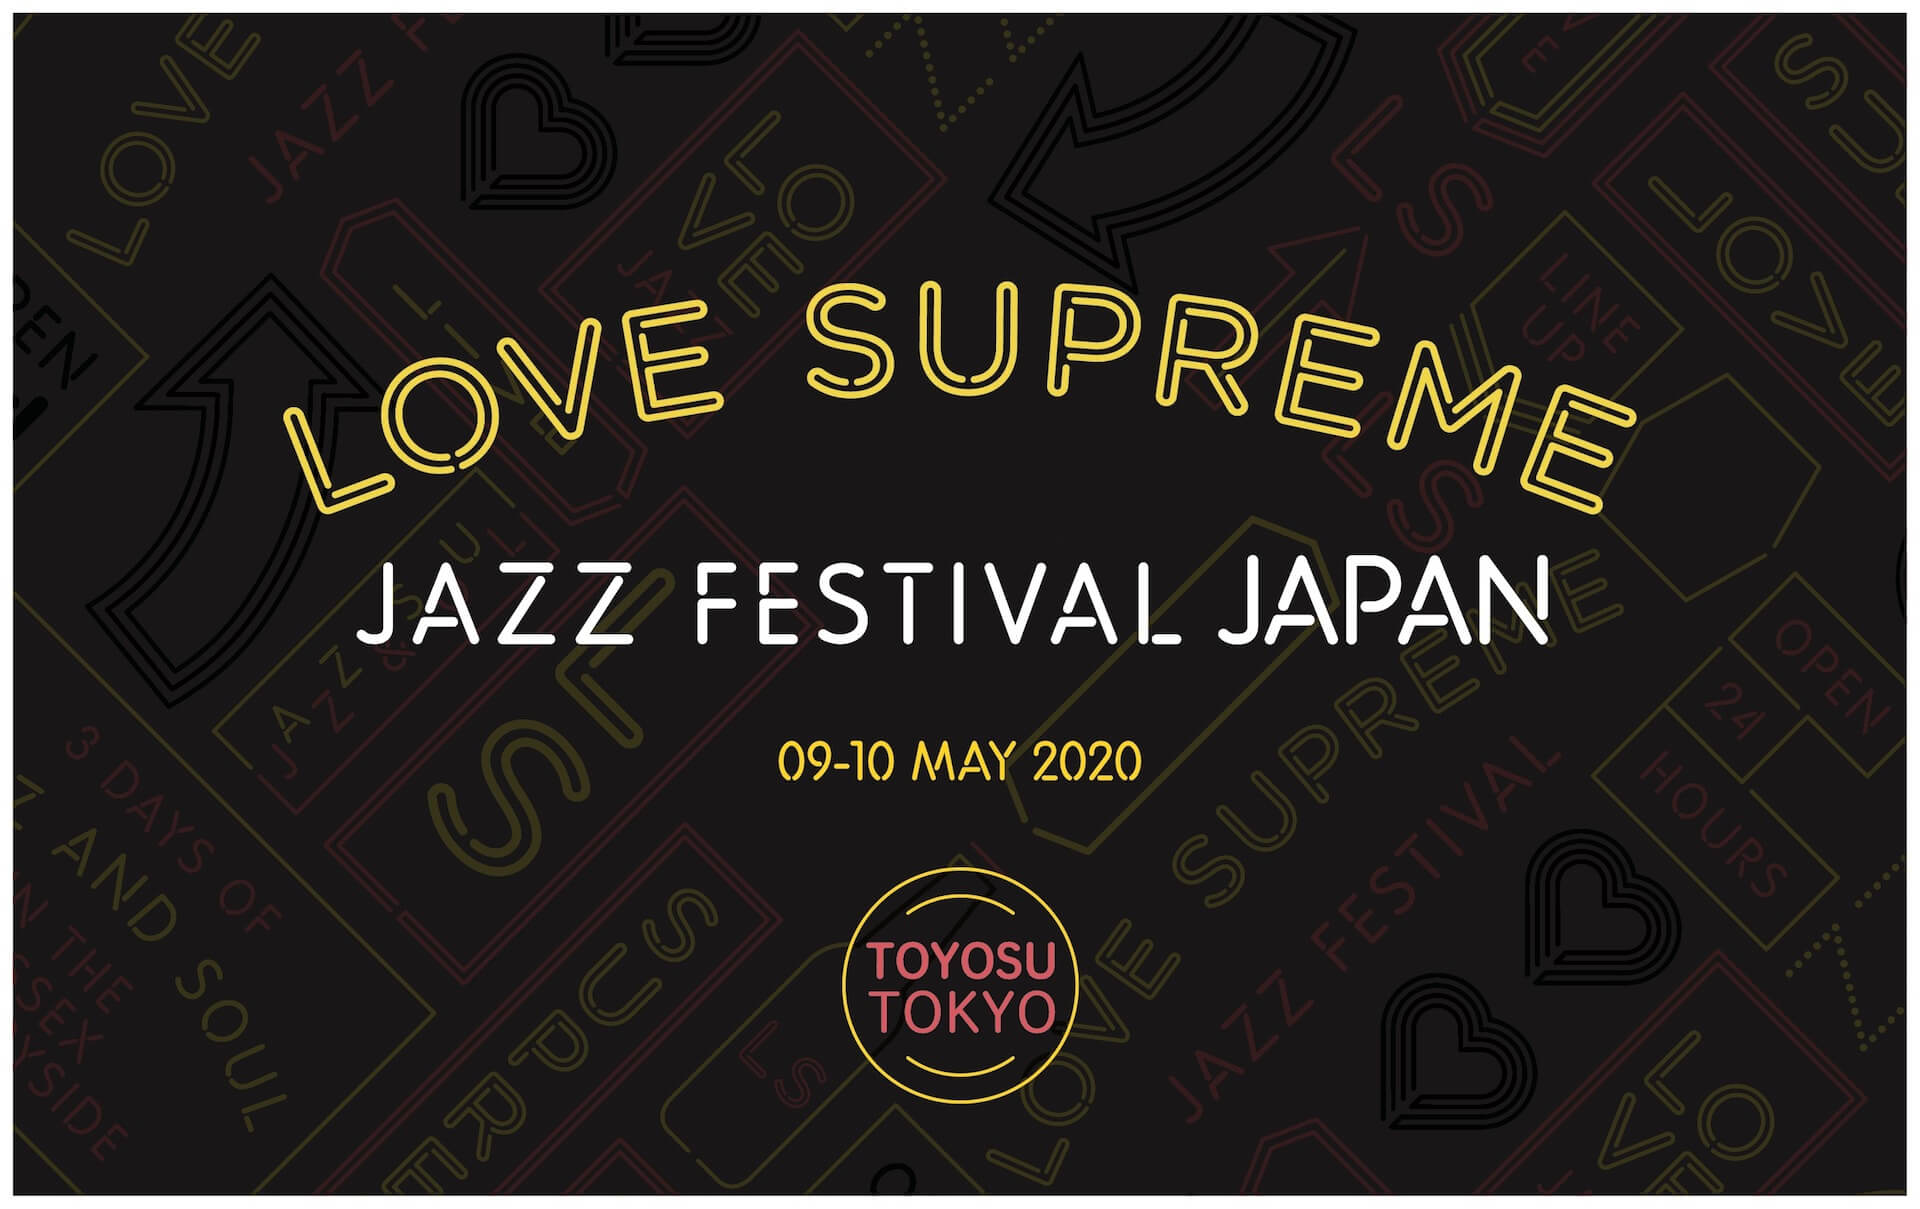 ストリートなイベント 東京 Love Supreme Jazz Festival Japan ヨーロッパ最大規模の野外ジャズフェスが5月に日本上陸 Represent